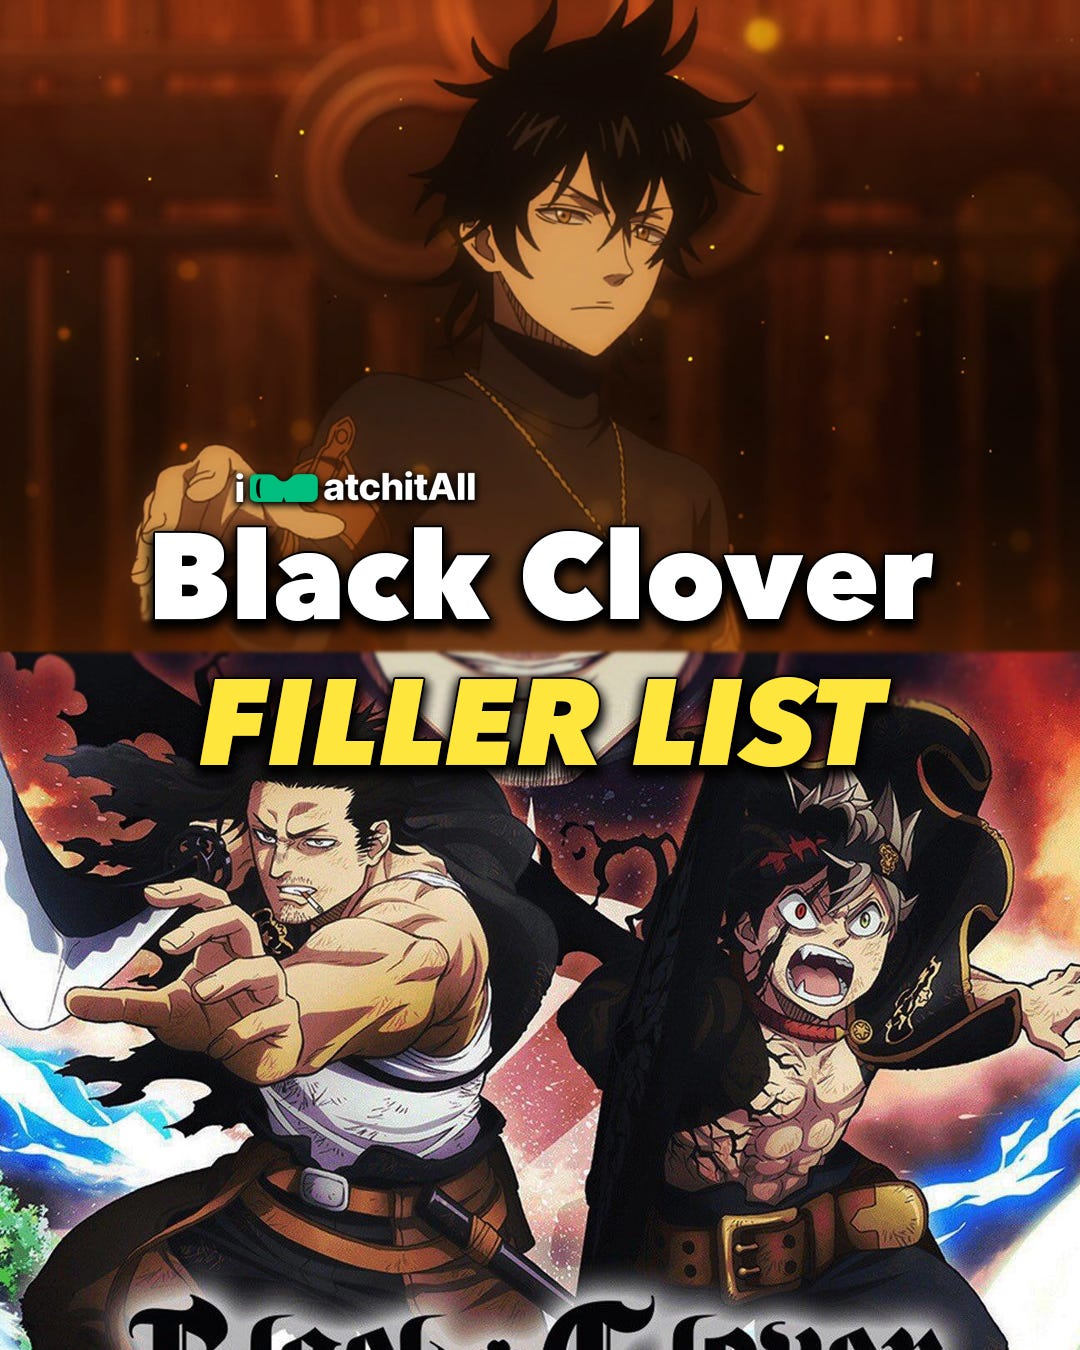 Black Clover Filler List: Episodes & Arcs You Can Skip